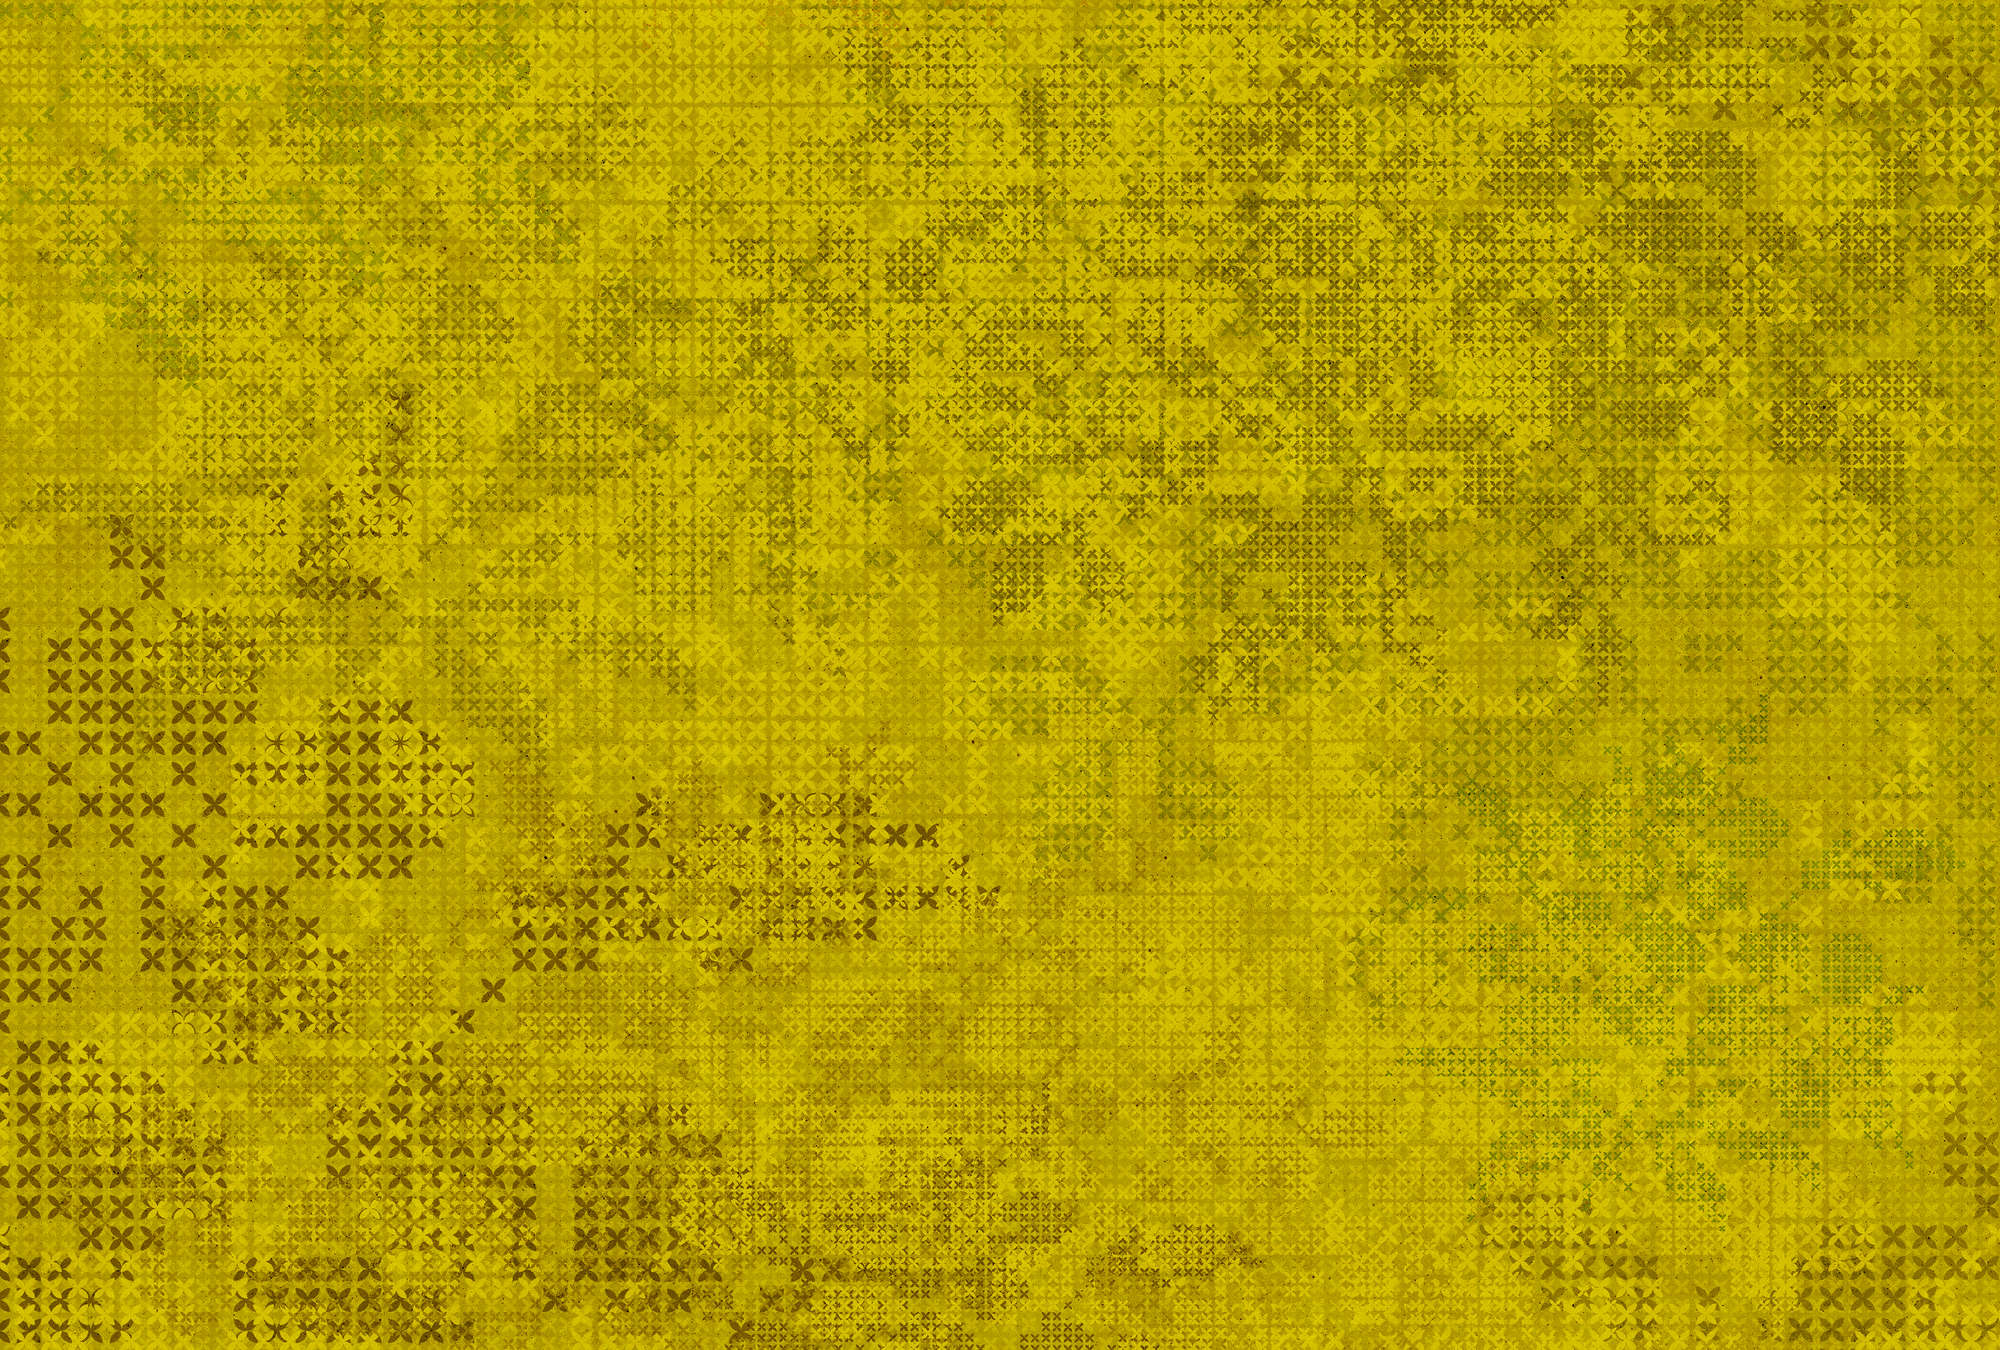             Het Kruissteekpatroon van het pixelbehang - muren door Patel
        